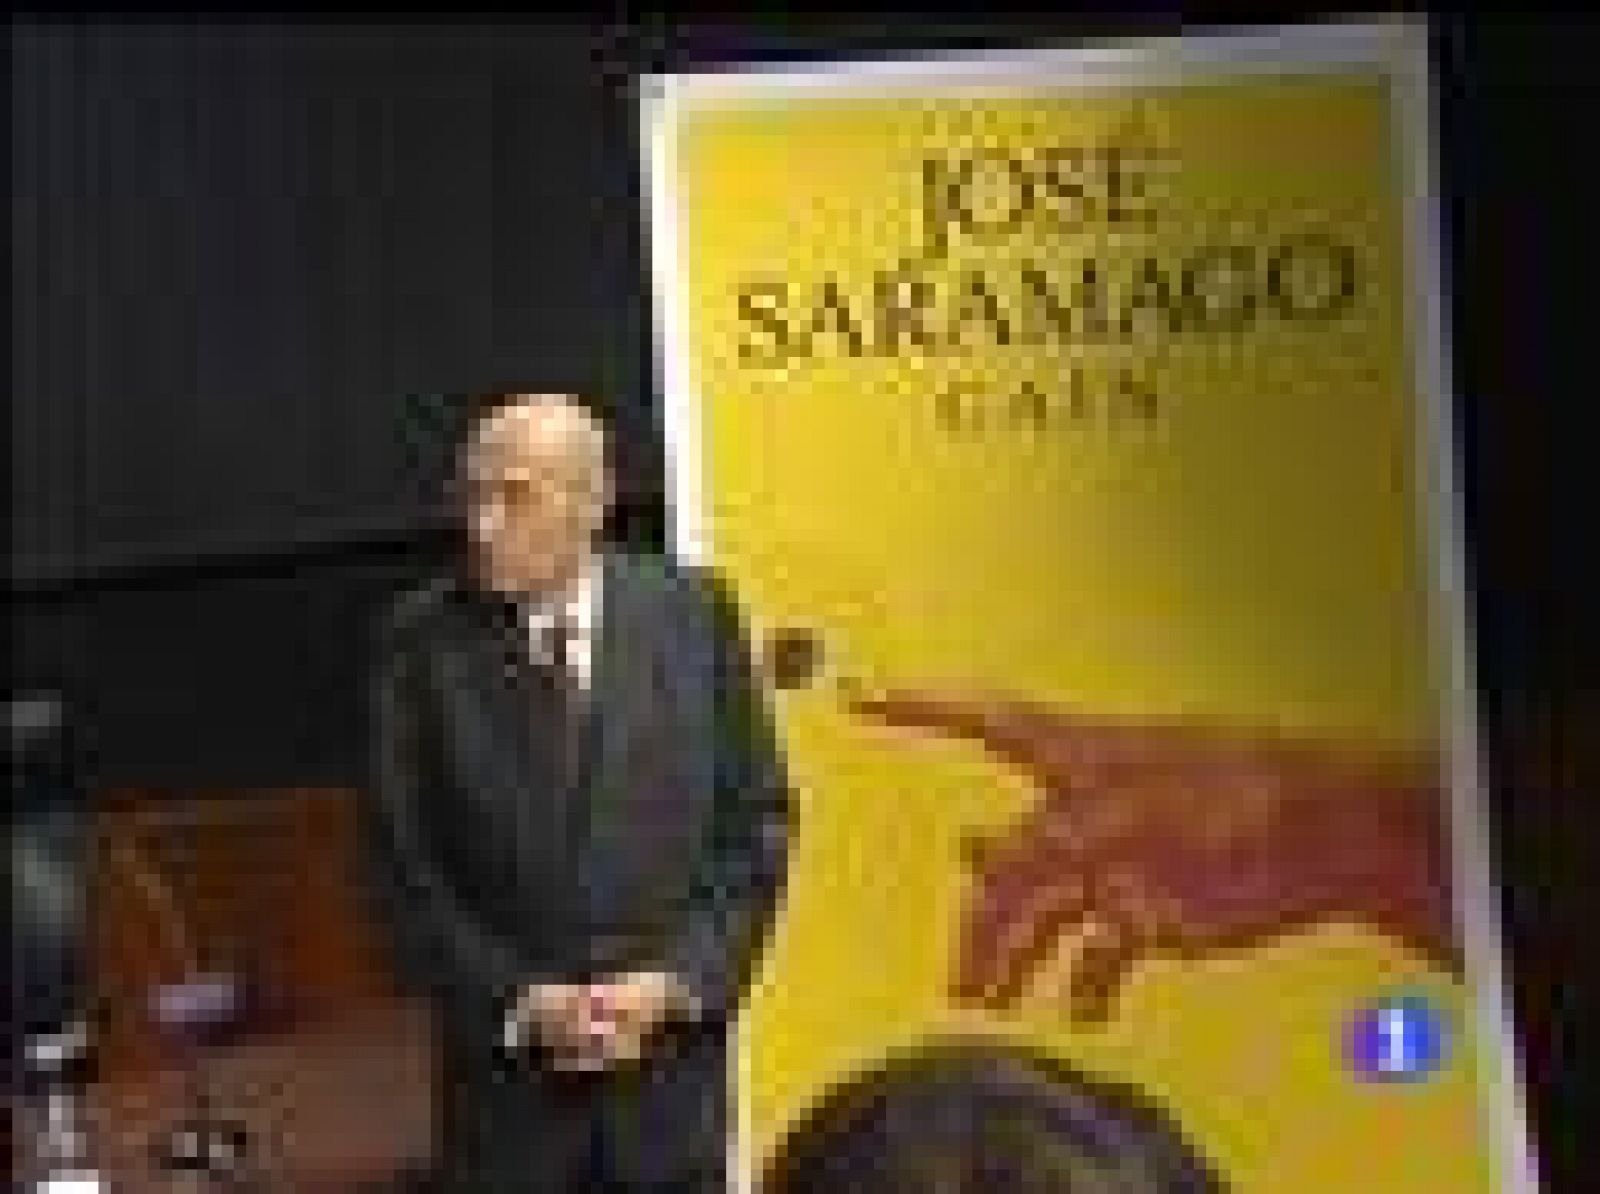   El Premio Nobel portugués, José Saramago, ha presentado su nuevo, y polémico libro, en Madrid; en el que hace una relectura de la biblia que ha levantado ampollas en Portugal